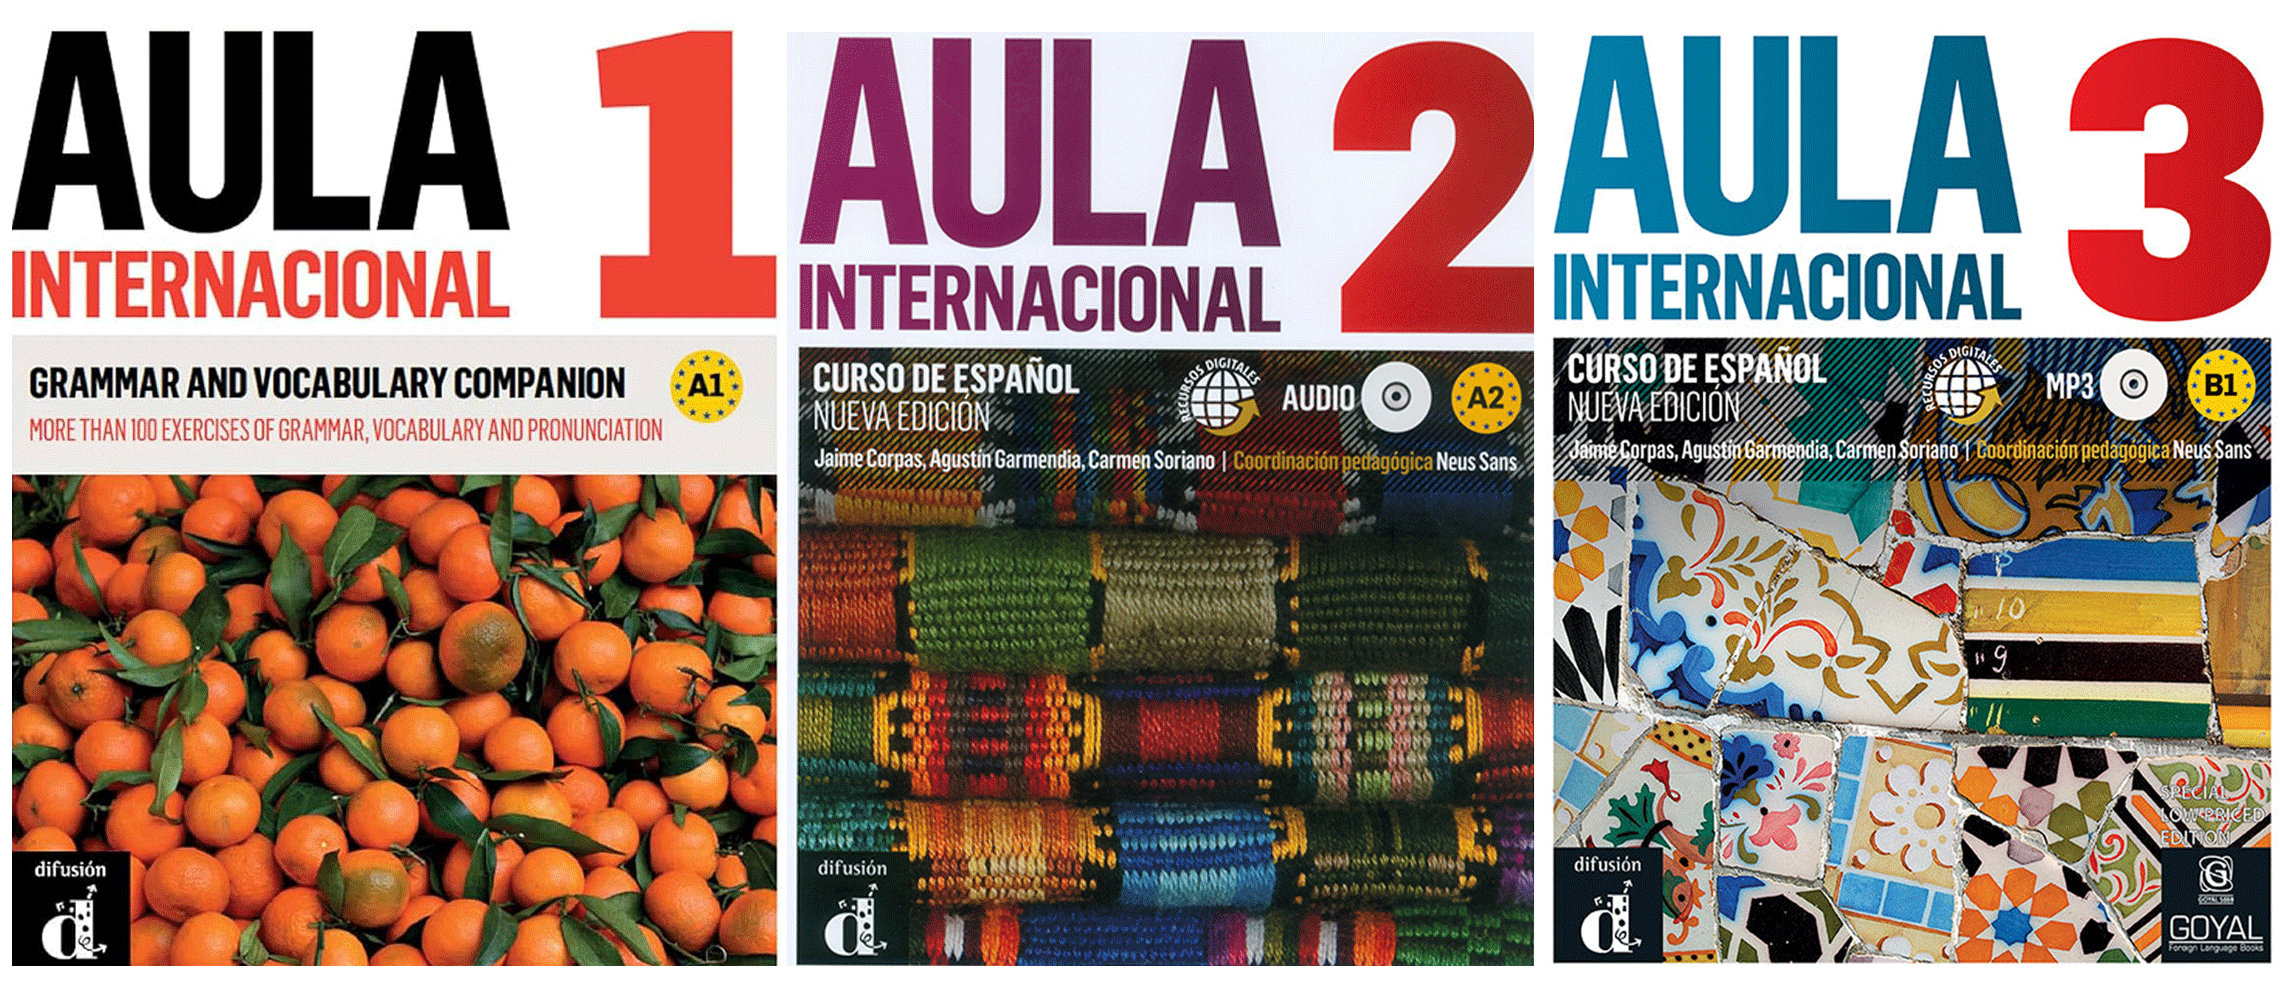 Aula1, Aula2, Aula3 Spanish language